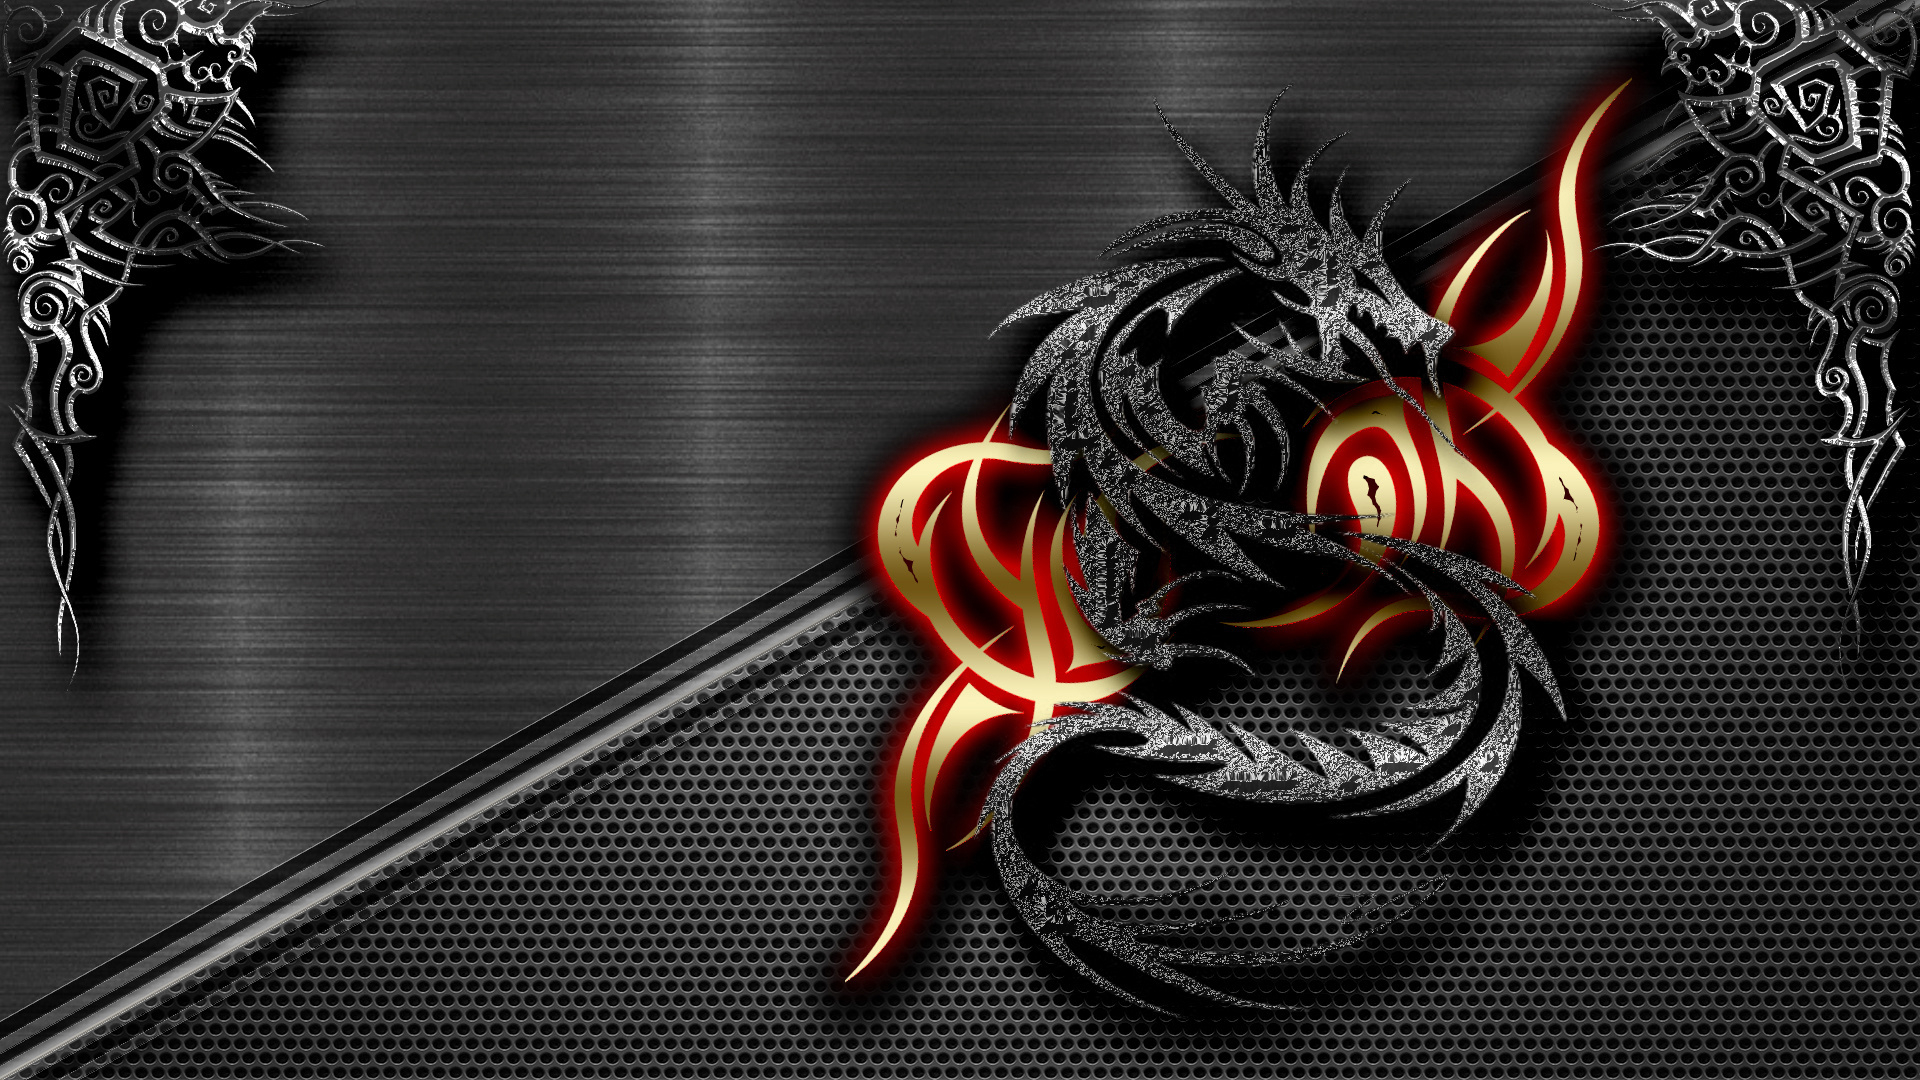 Black Dragon Wallpaper HD - WallpaperSafari